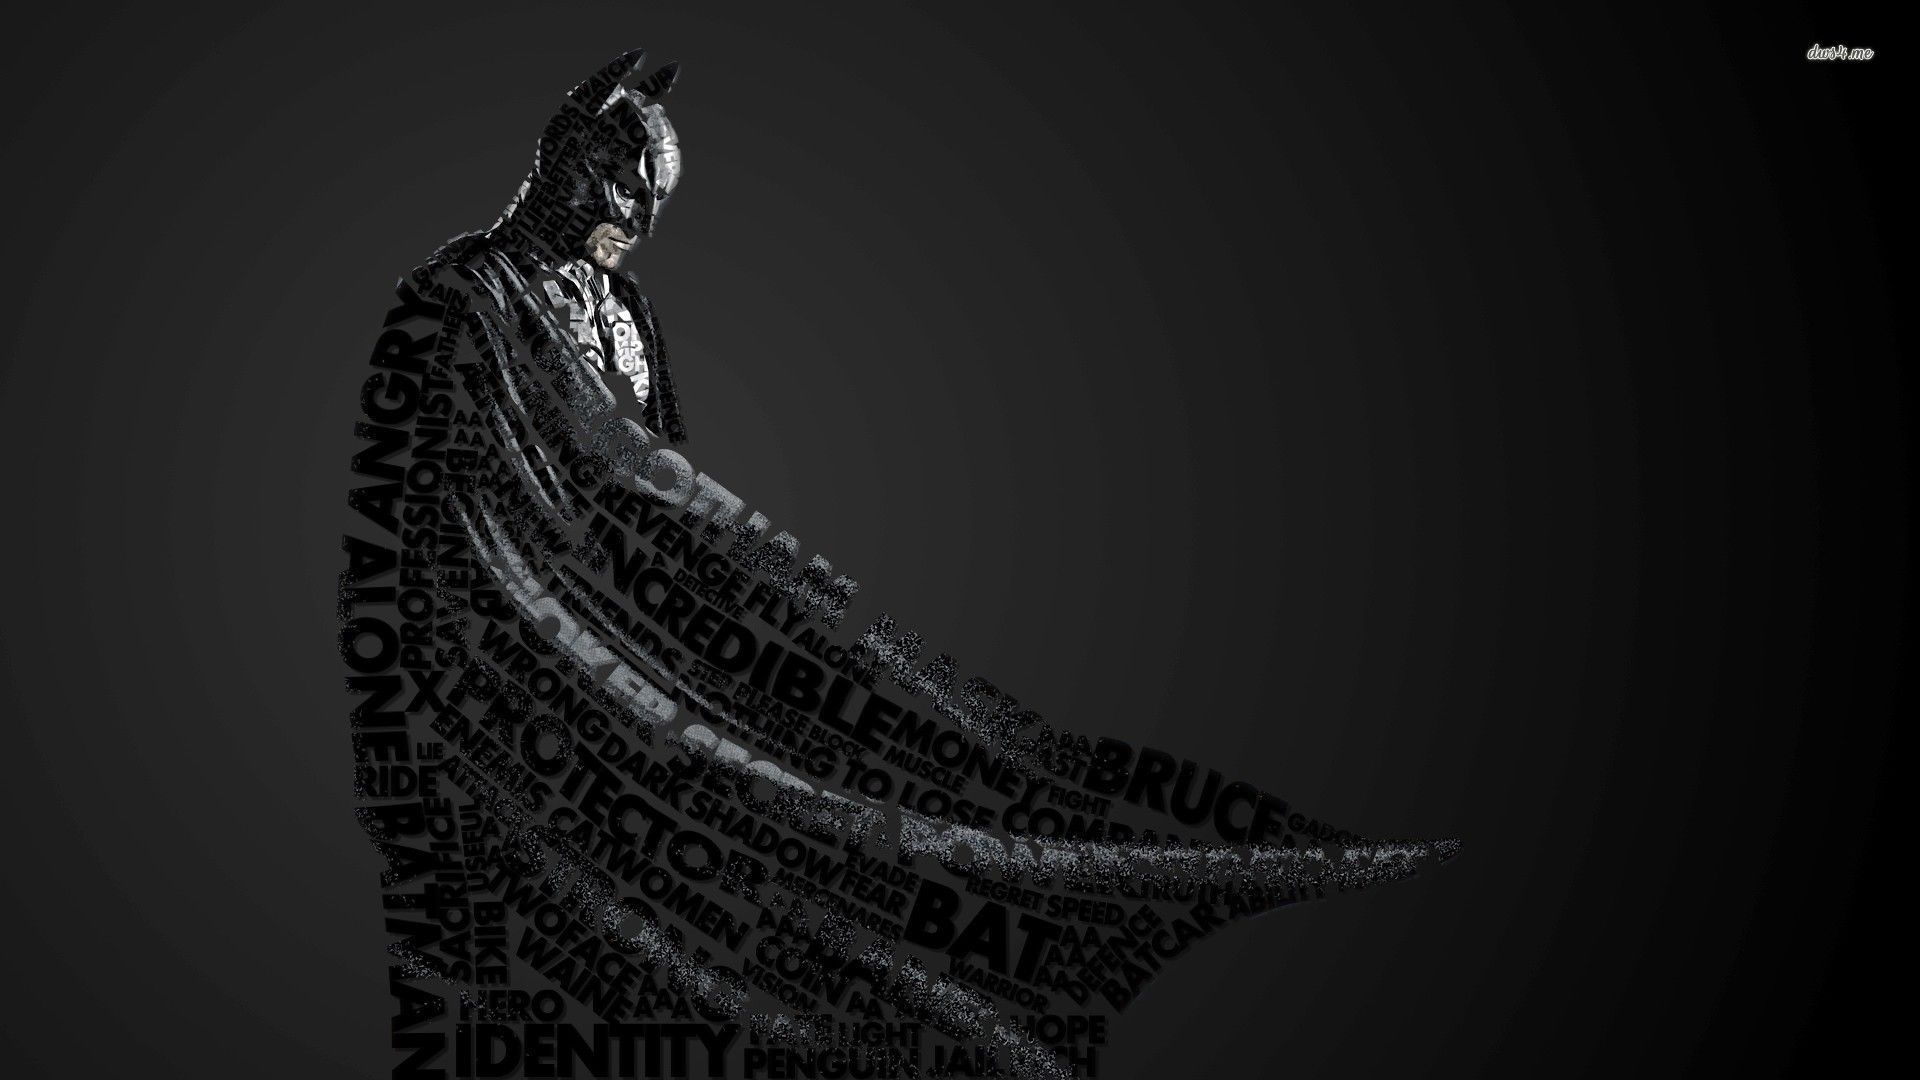 Batman typography wallpaper - Typography wallpapers